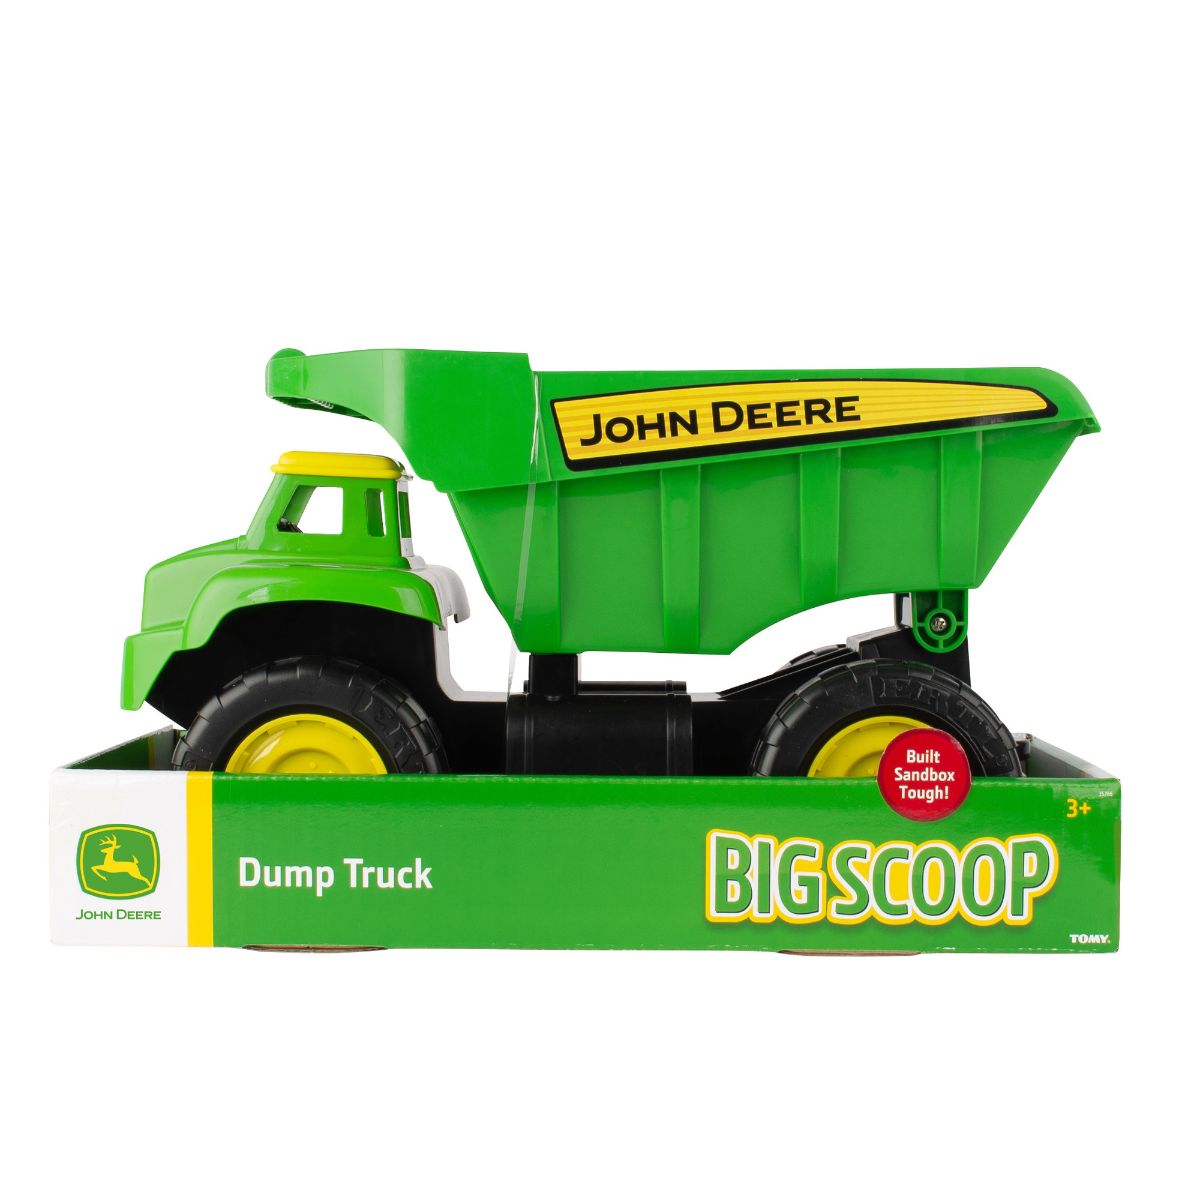 John Deere 38cm Big Scoop Dump Truck Green